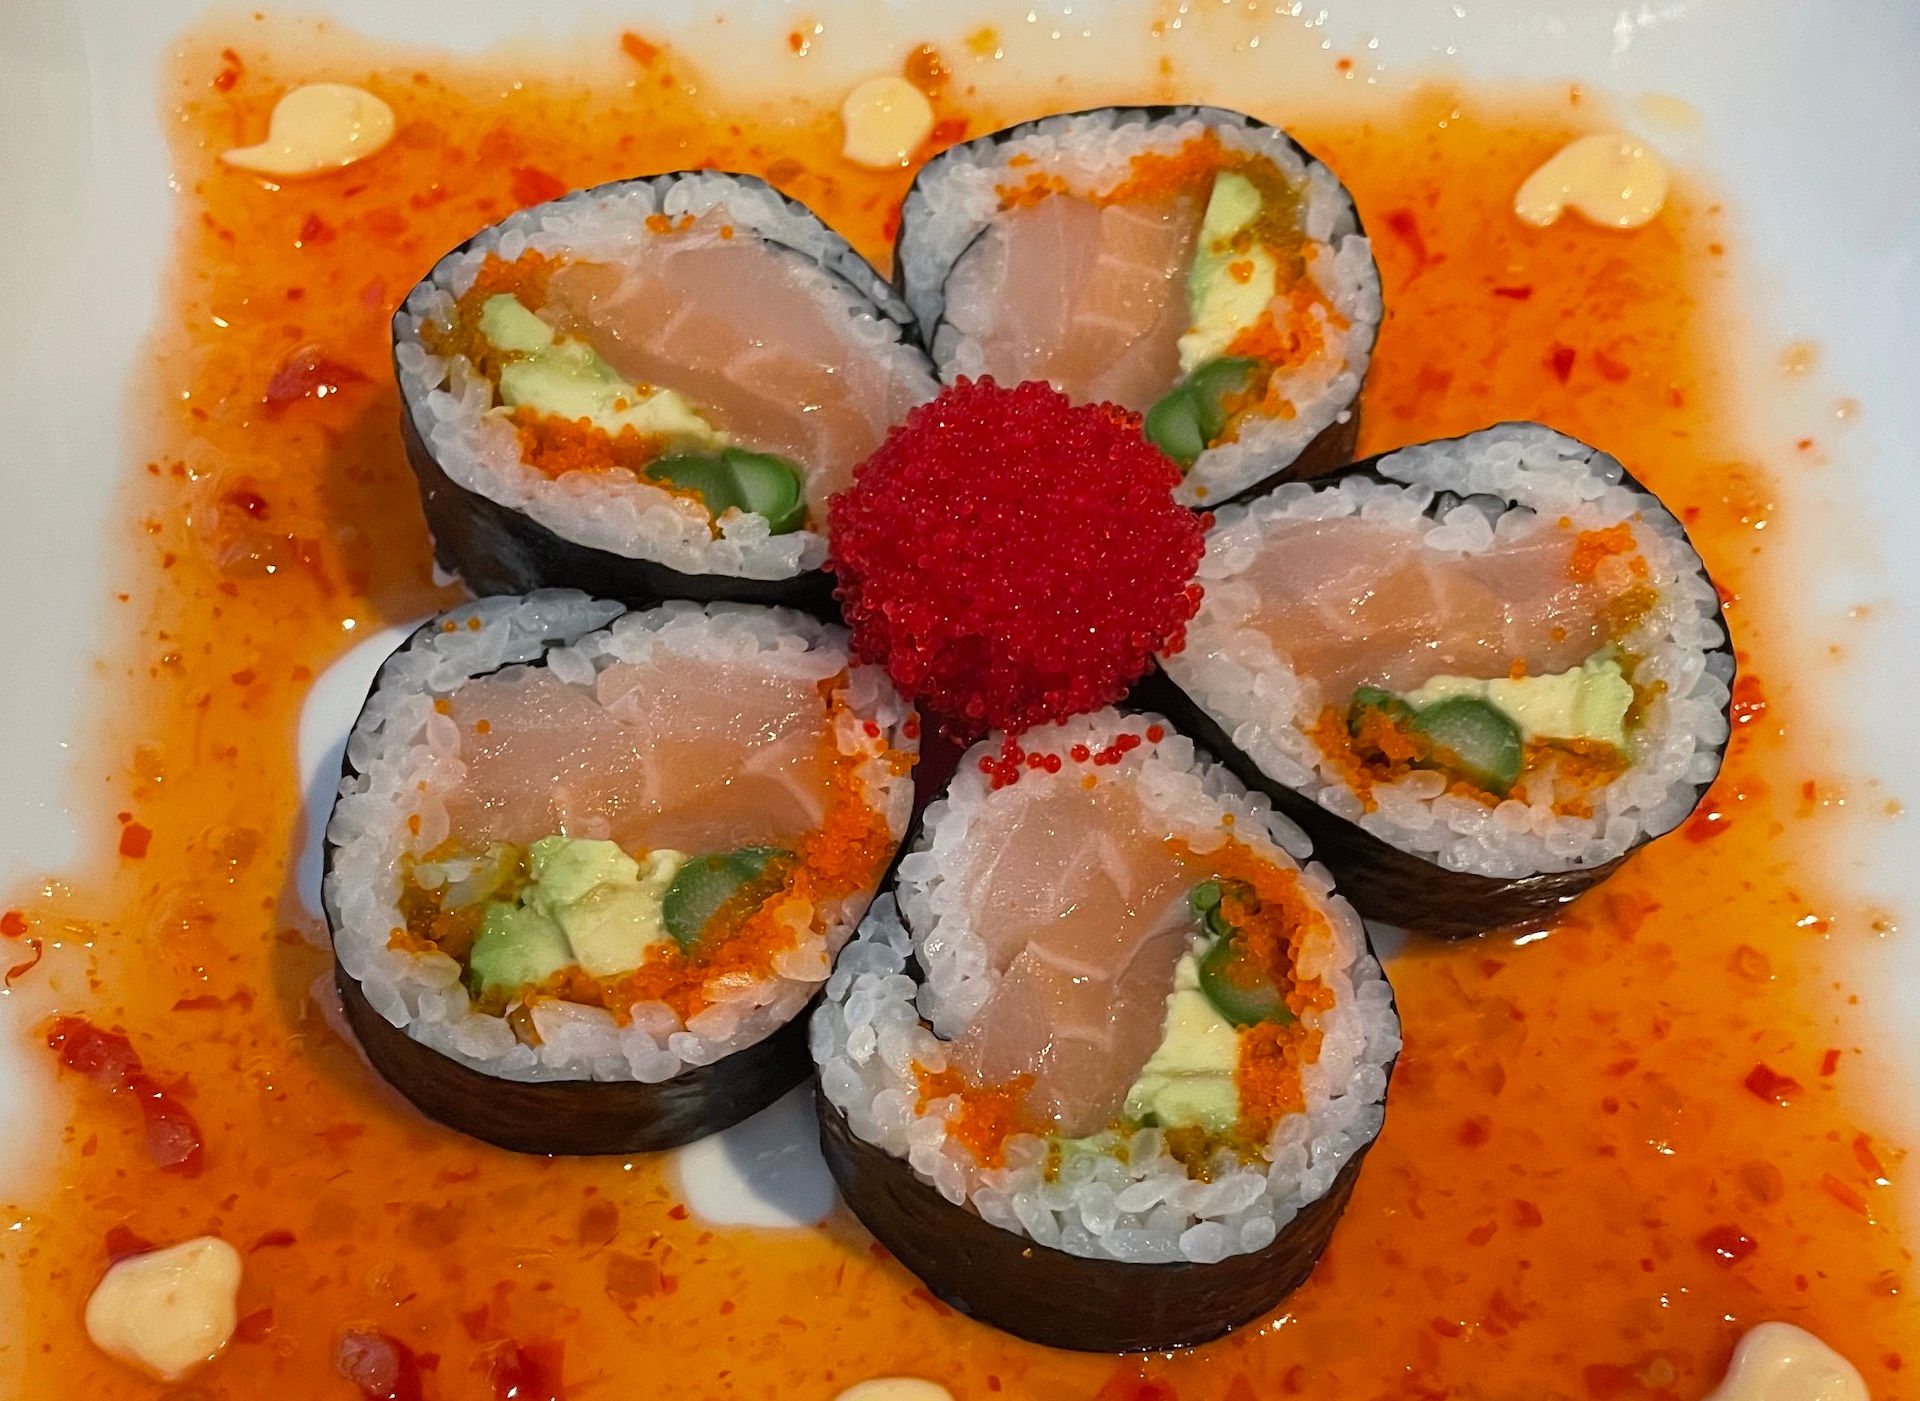 Sushi Dreams